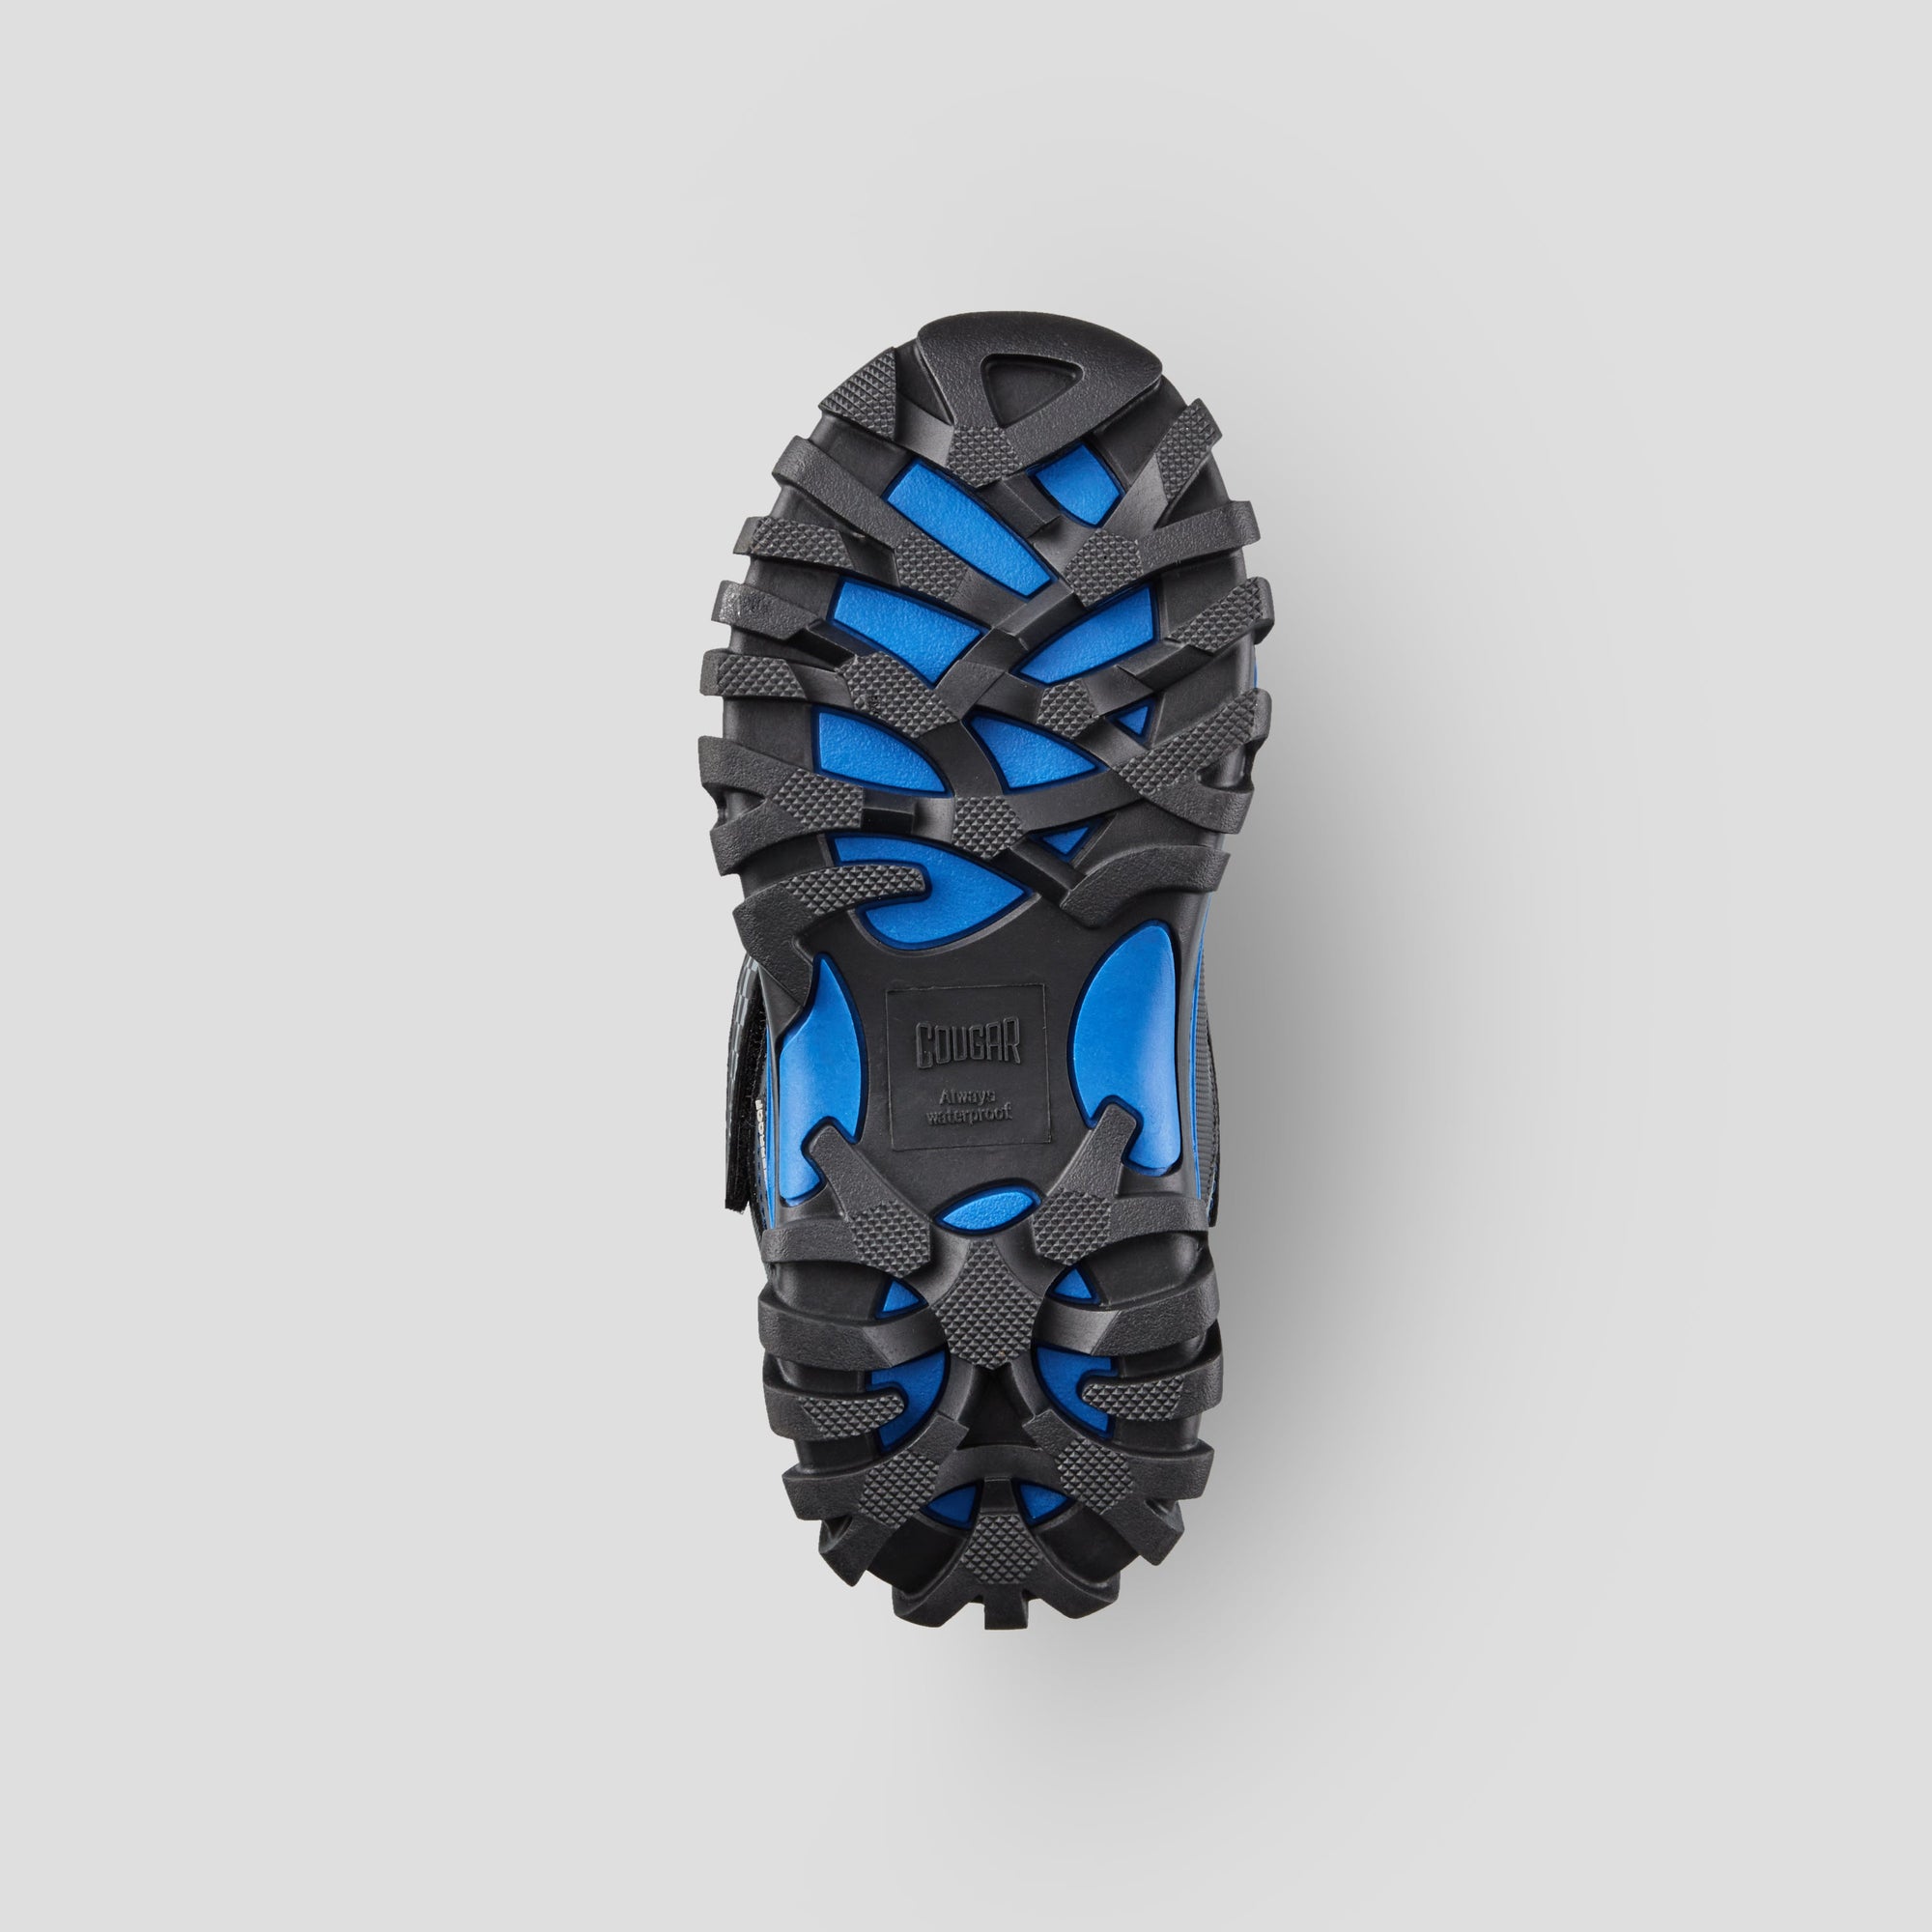 Triumph - Botte d'hiver imperméable en nylon (Junior+) - Colour Black-Blue